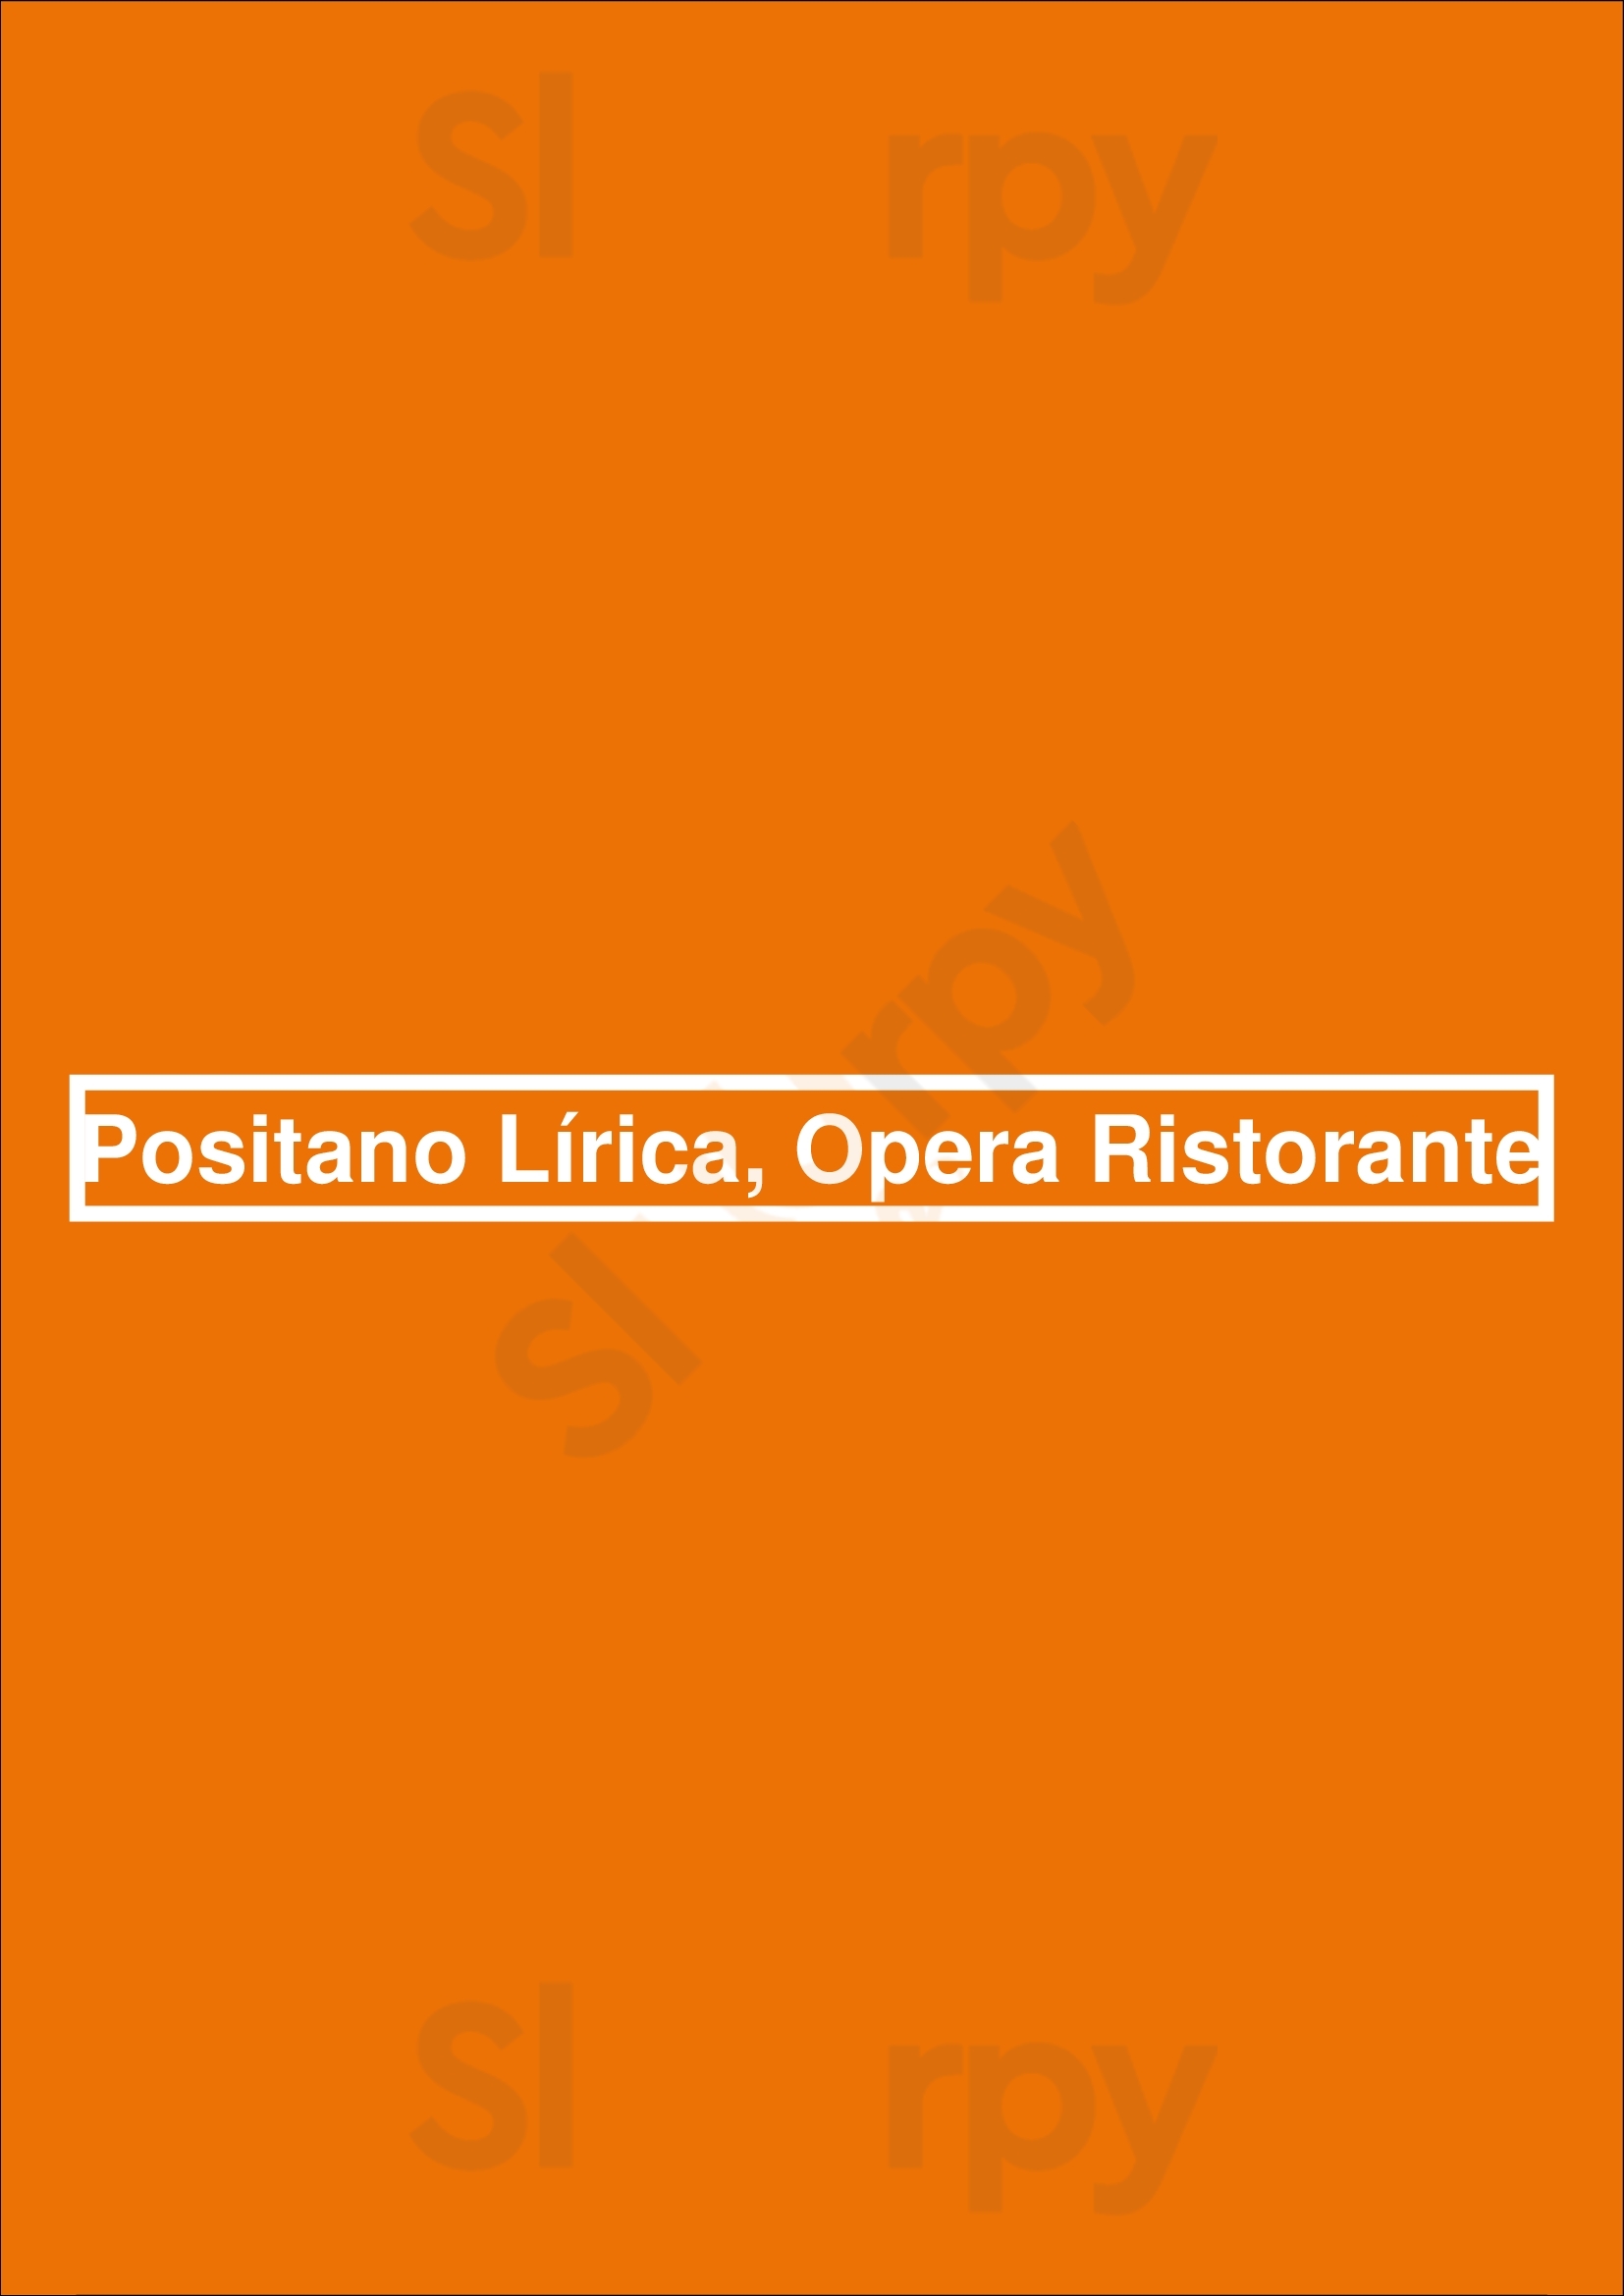 Positano Lírica, Opera Ristorante Buenos Aires Menu - 1